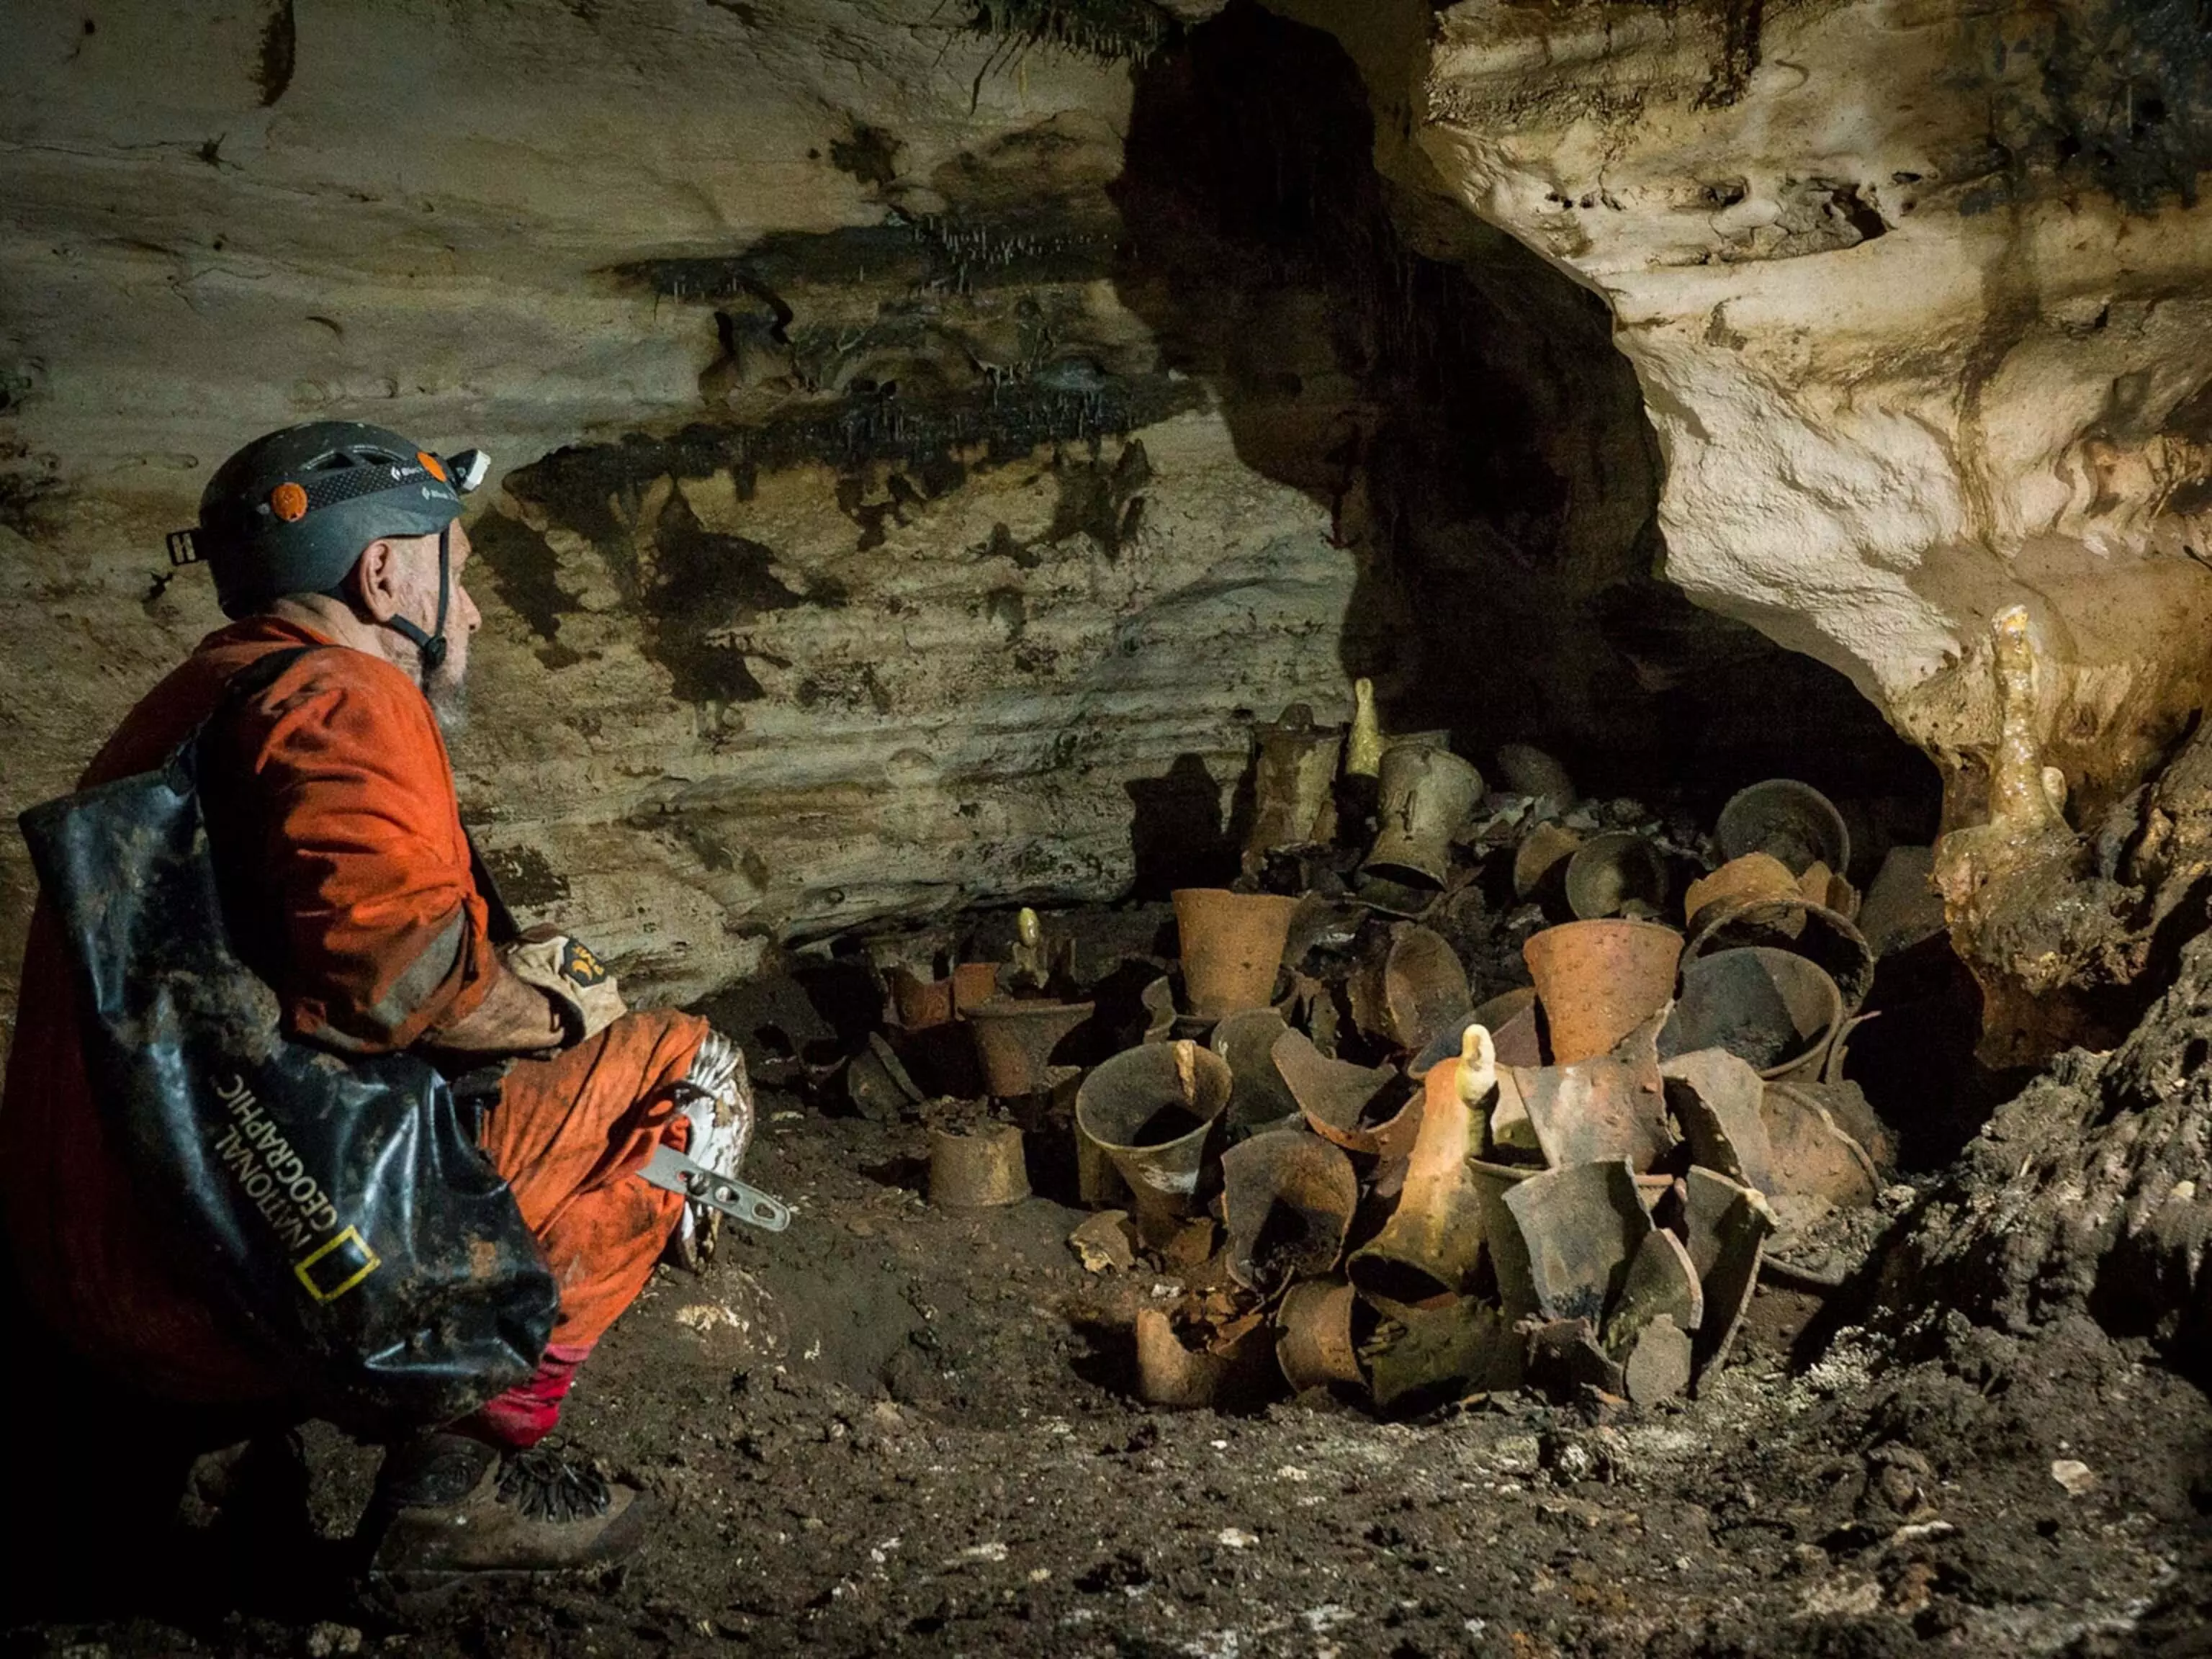 Science: 10,000 साल पुरानी प्राचीन गुफा अनुष्ठान दुनिया की सबसे पुरानी परंपरा